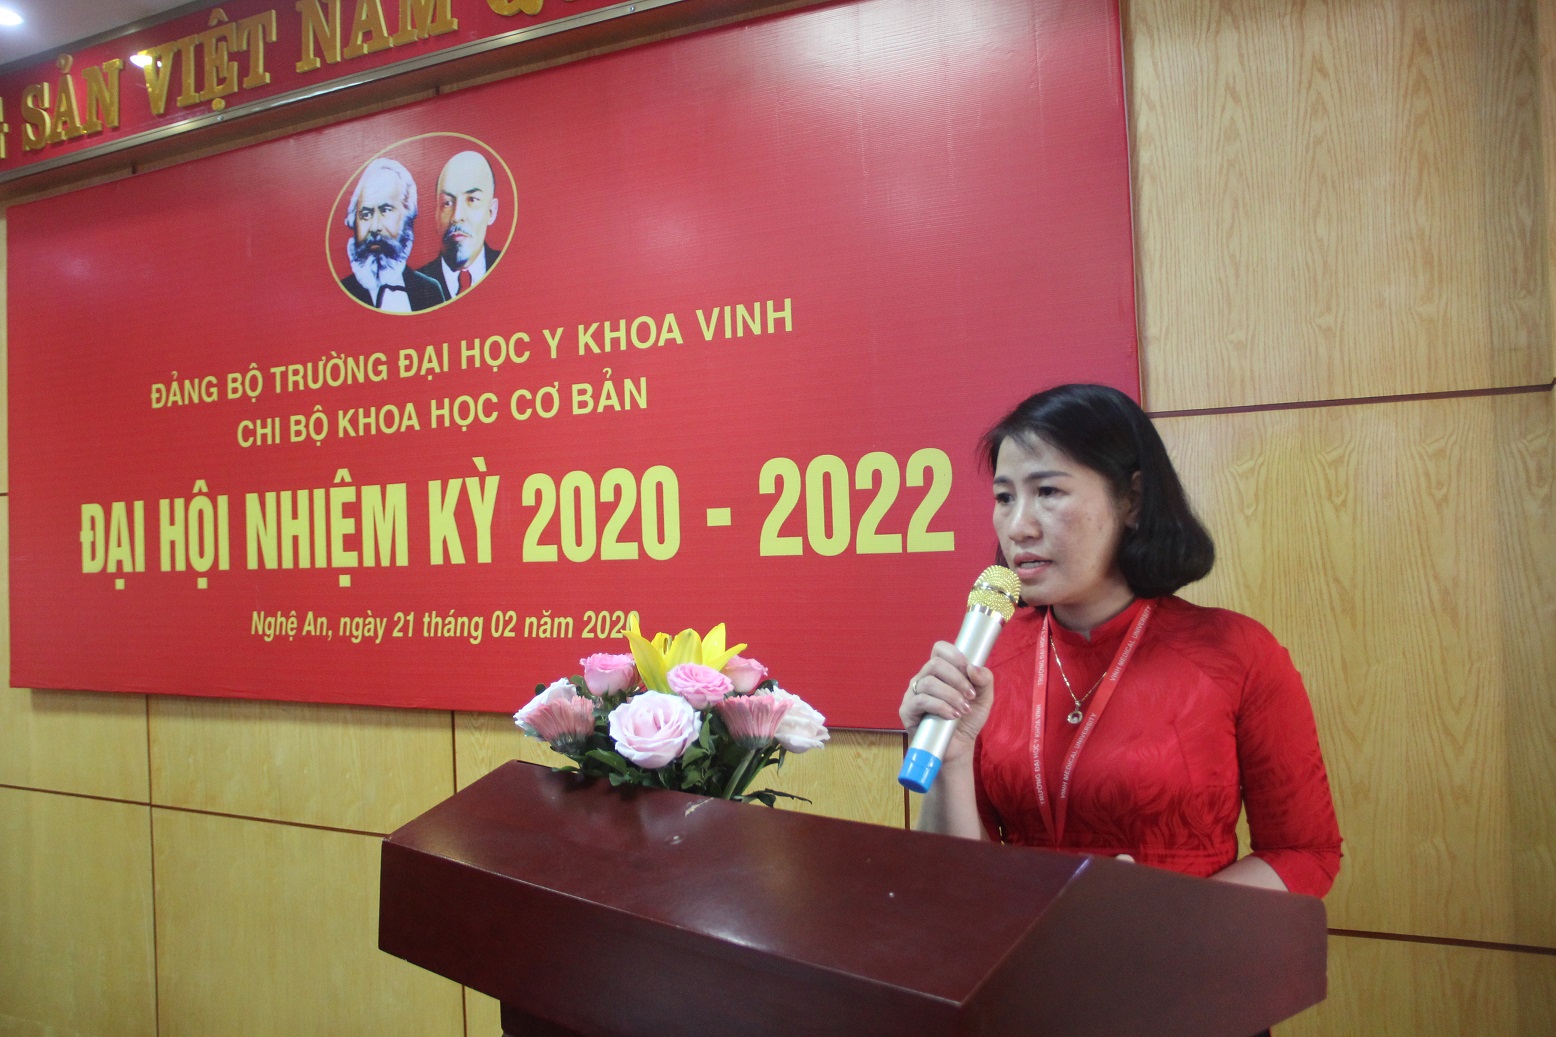 Đ/c Nguyễn Thị Quỳnh Nga - Bí thư Chi bộ phát biểu nhận nhiệm vụ